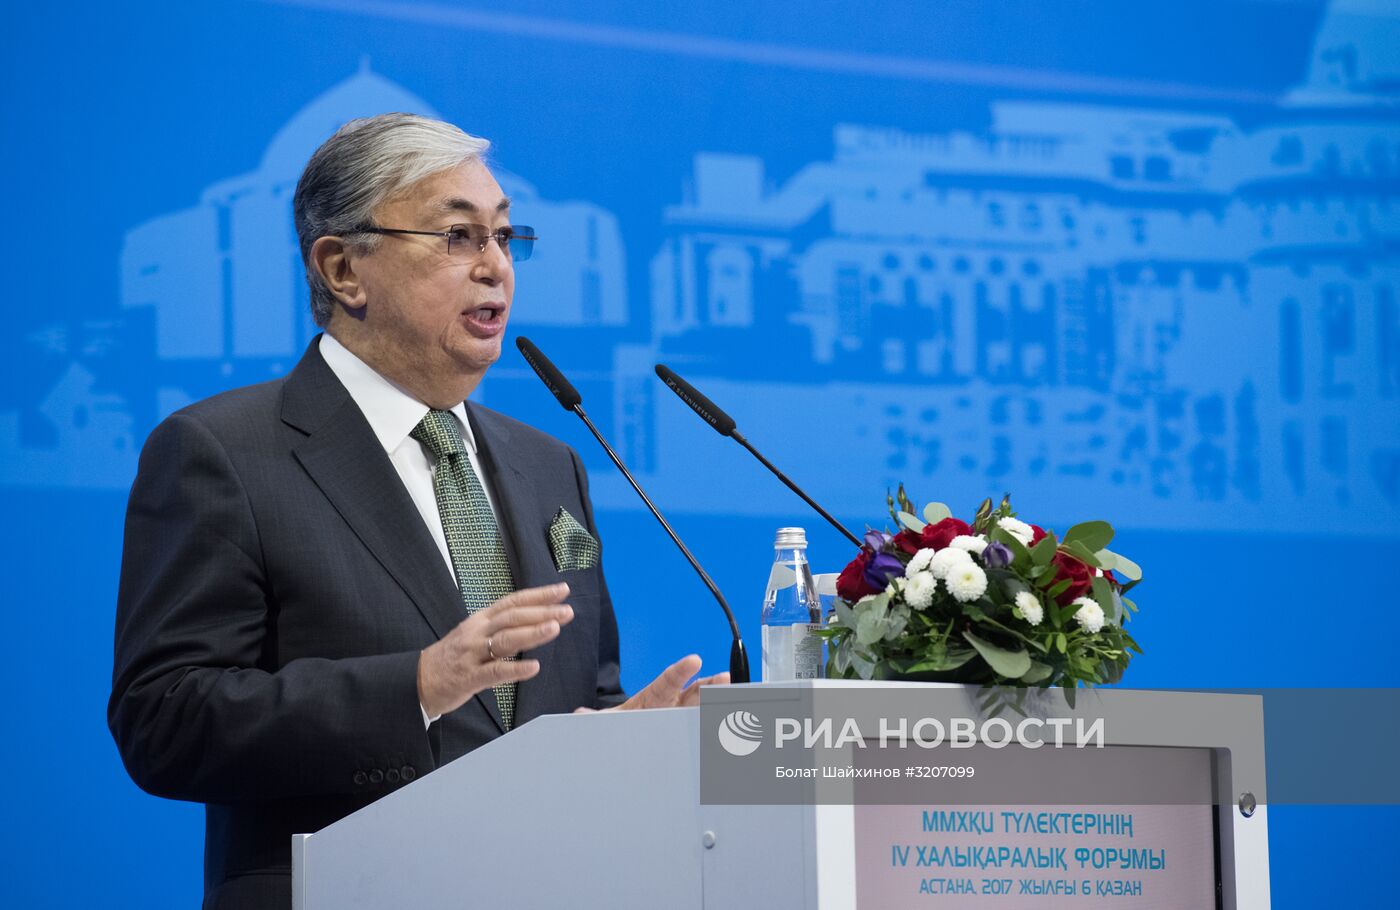 IV Международный форум выпускников МГИМО в Казахстане